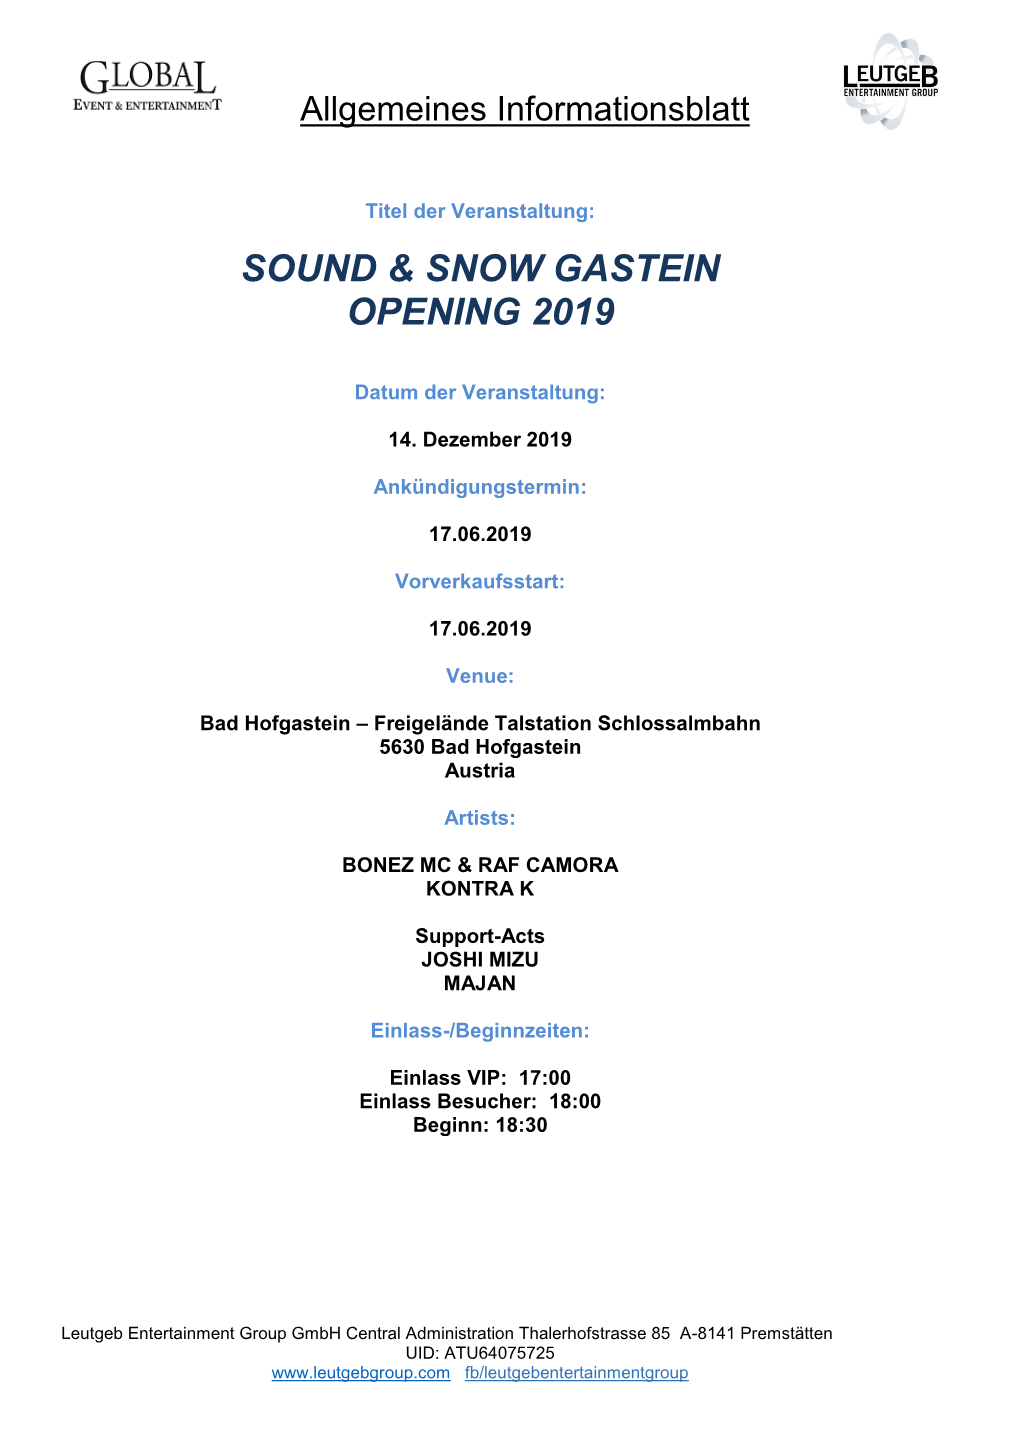 Sound & Snow Gastein Opening 2019